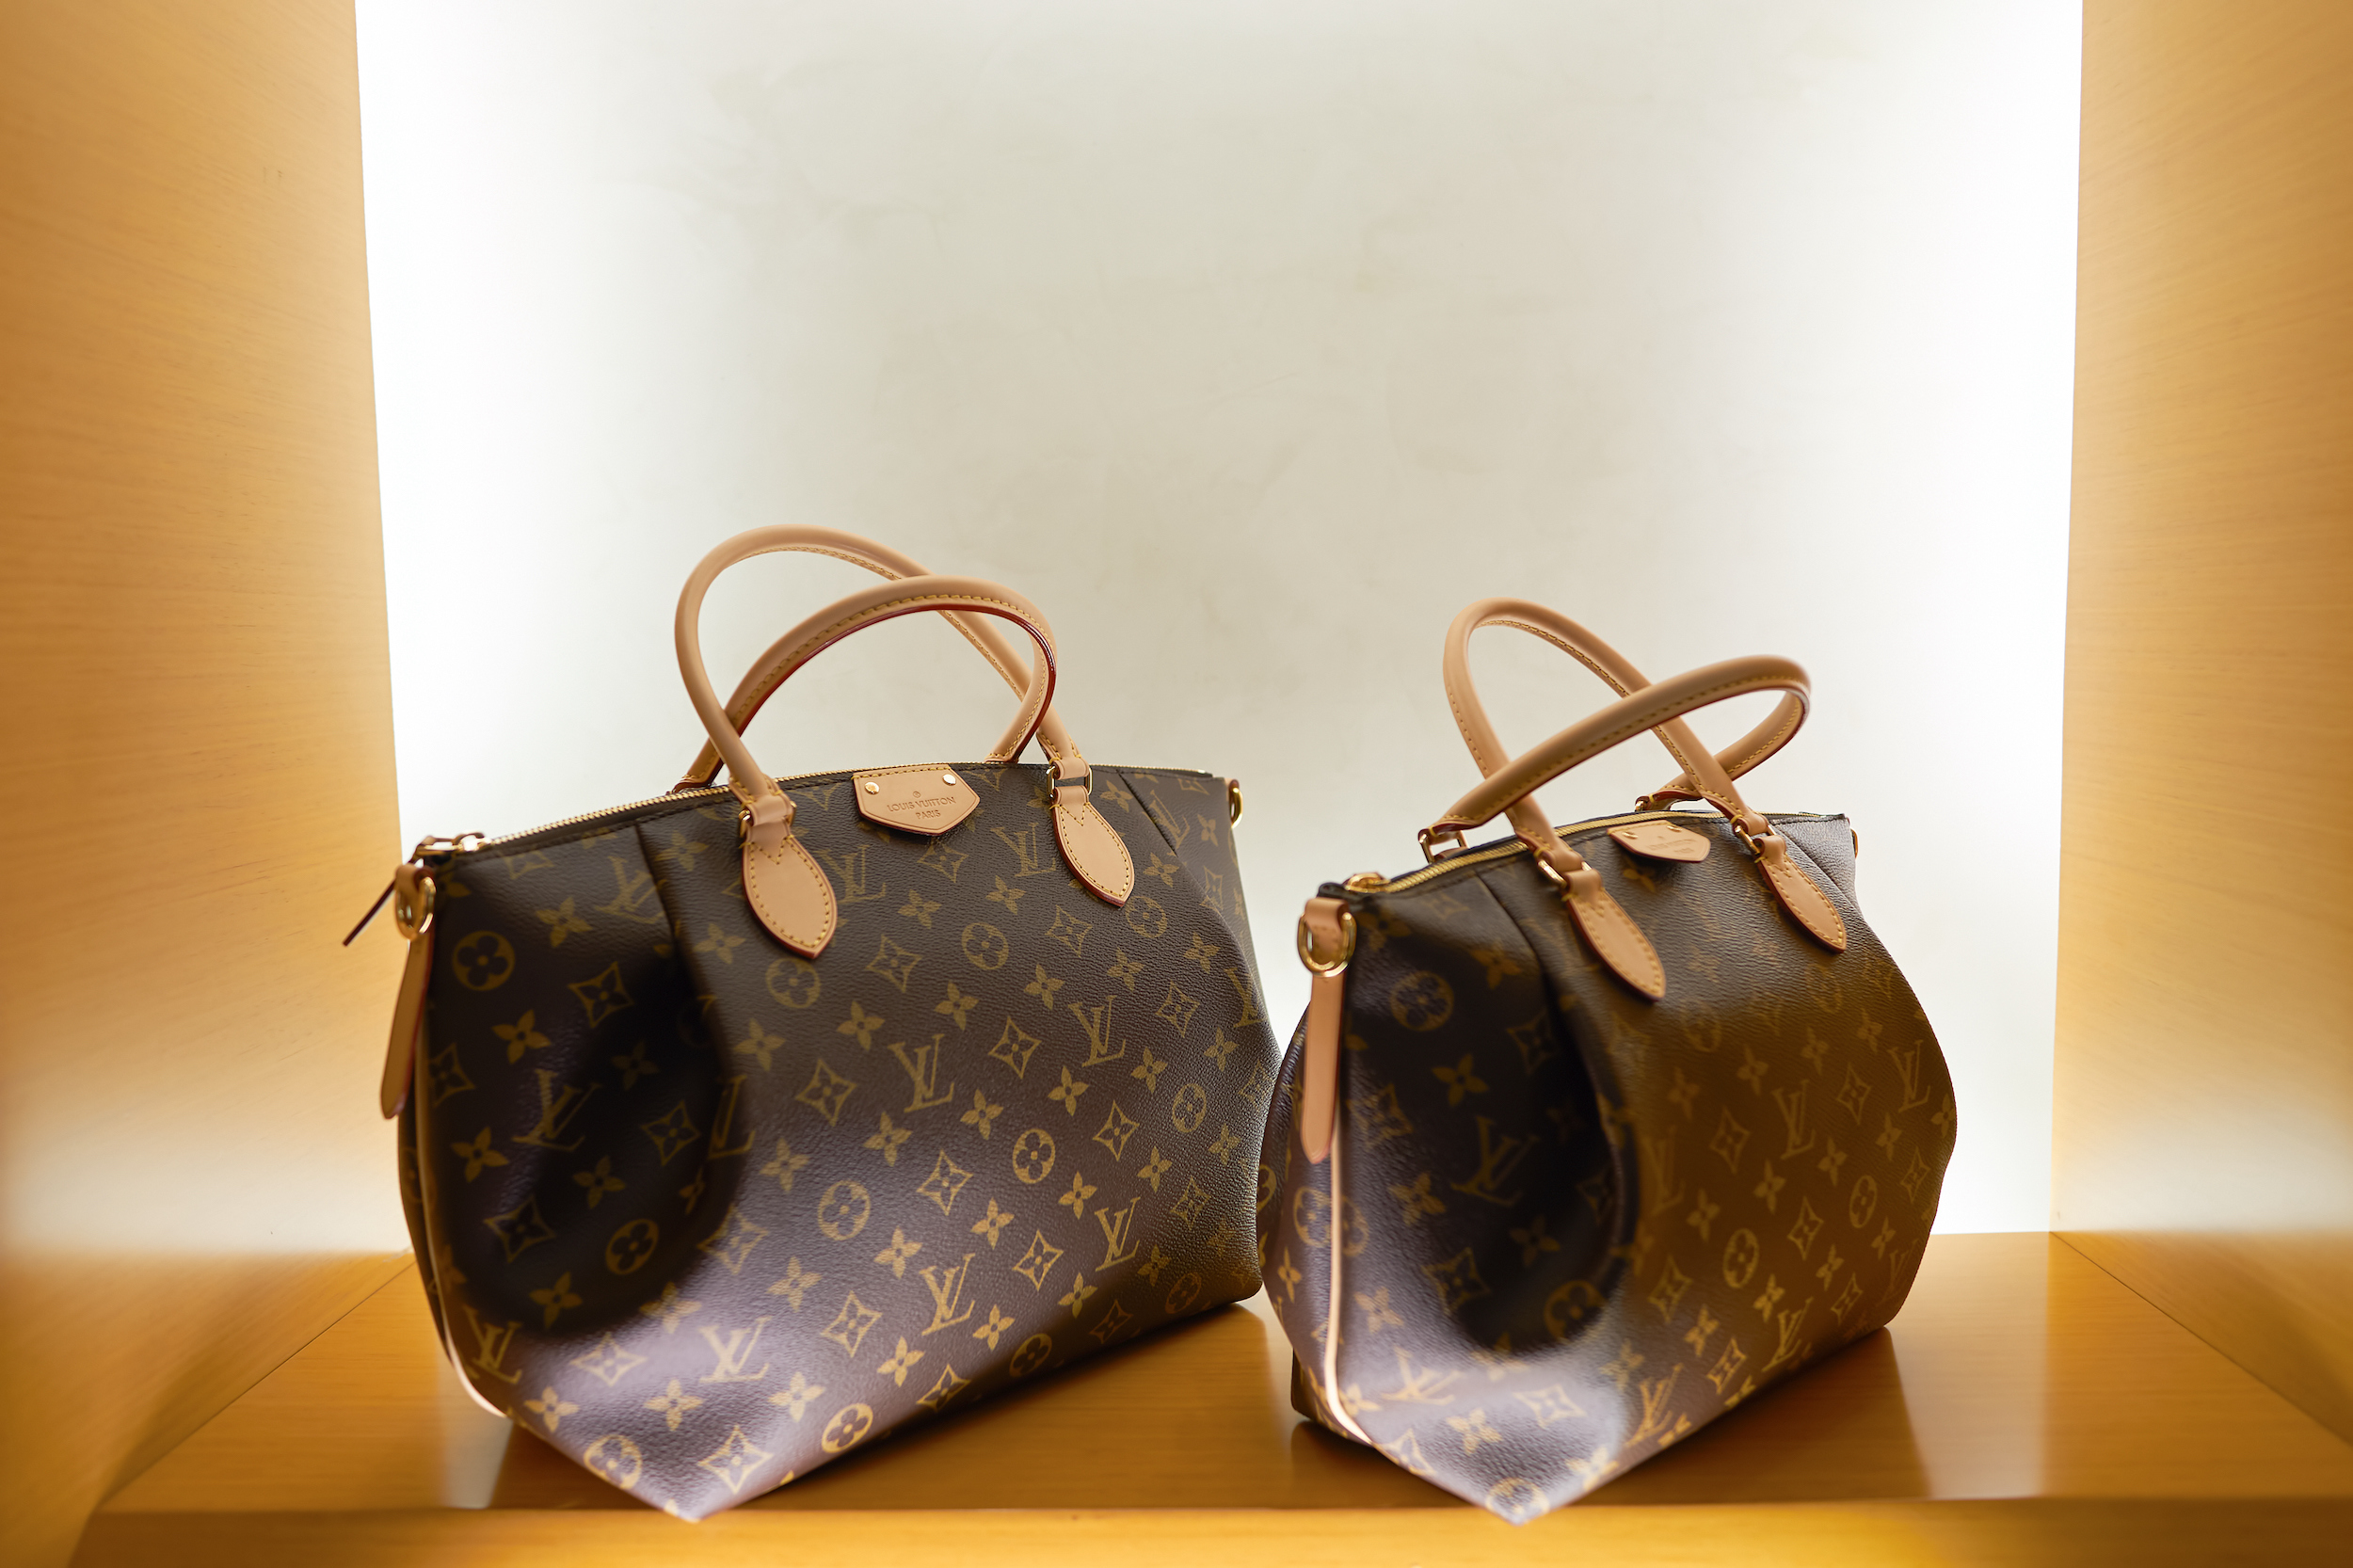 Do Louis Vuitton bags last a lifetime? - Quora